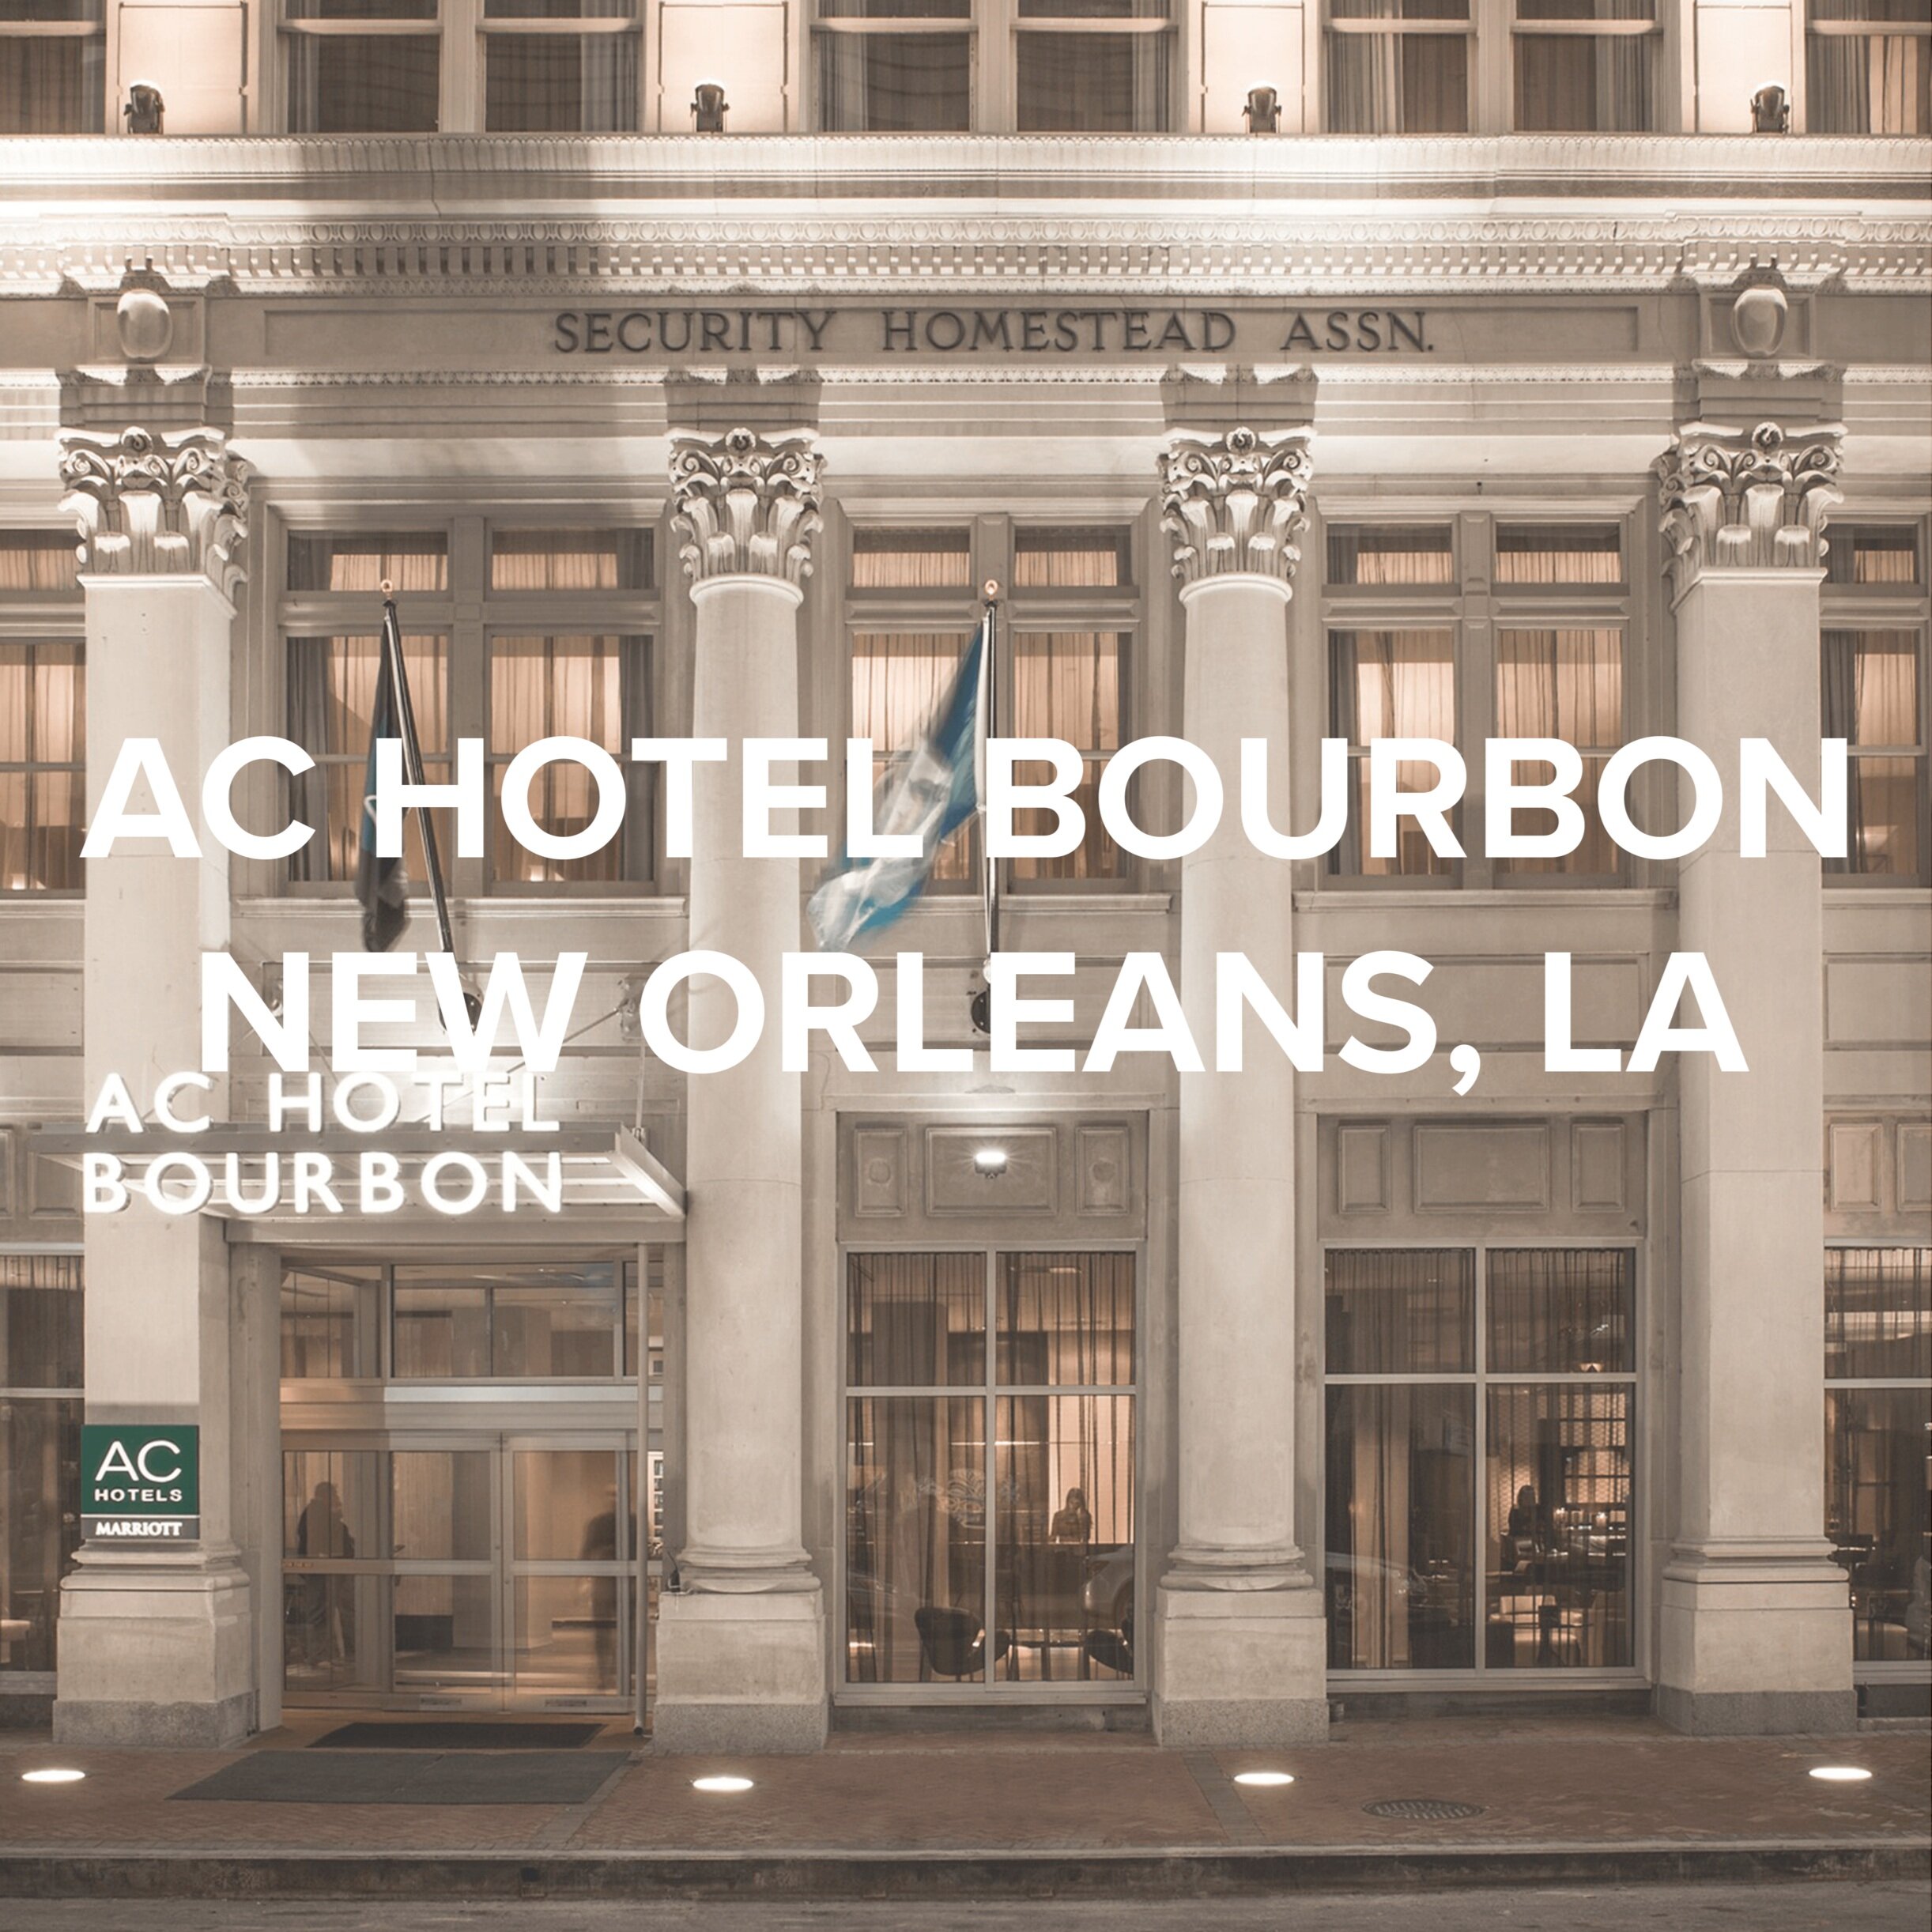 AC HOTEL BOURBON | NEW ORLEANS, LA